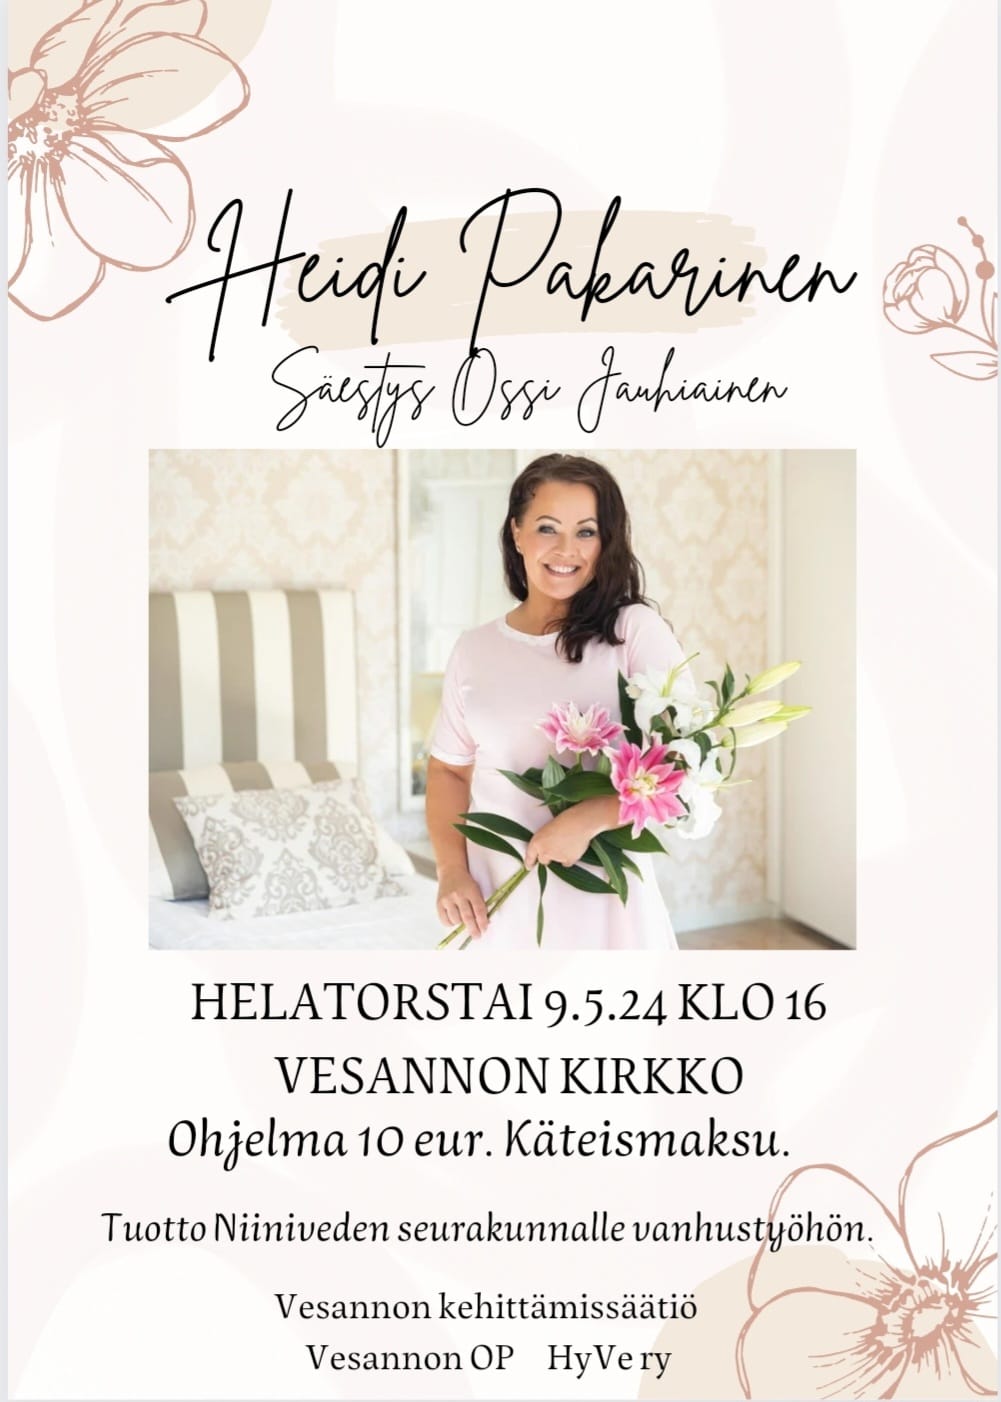 Heidi Pakarisen konsertti Vesannon kirkossa 9.5. klo 16